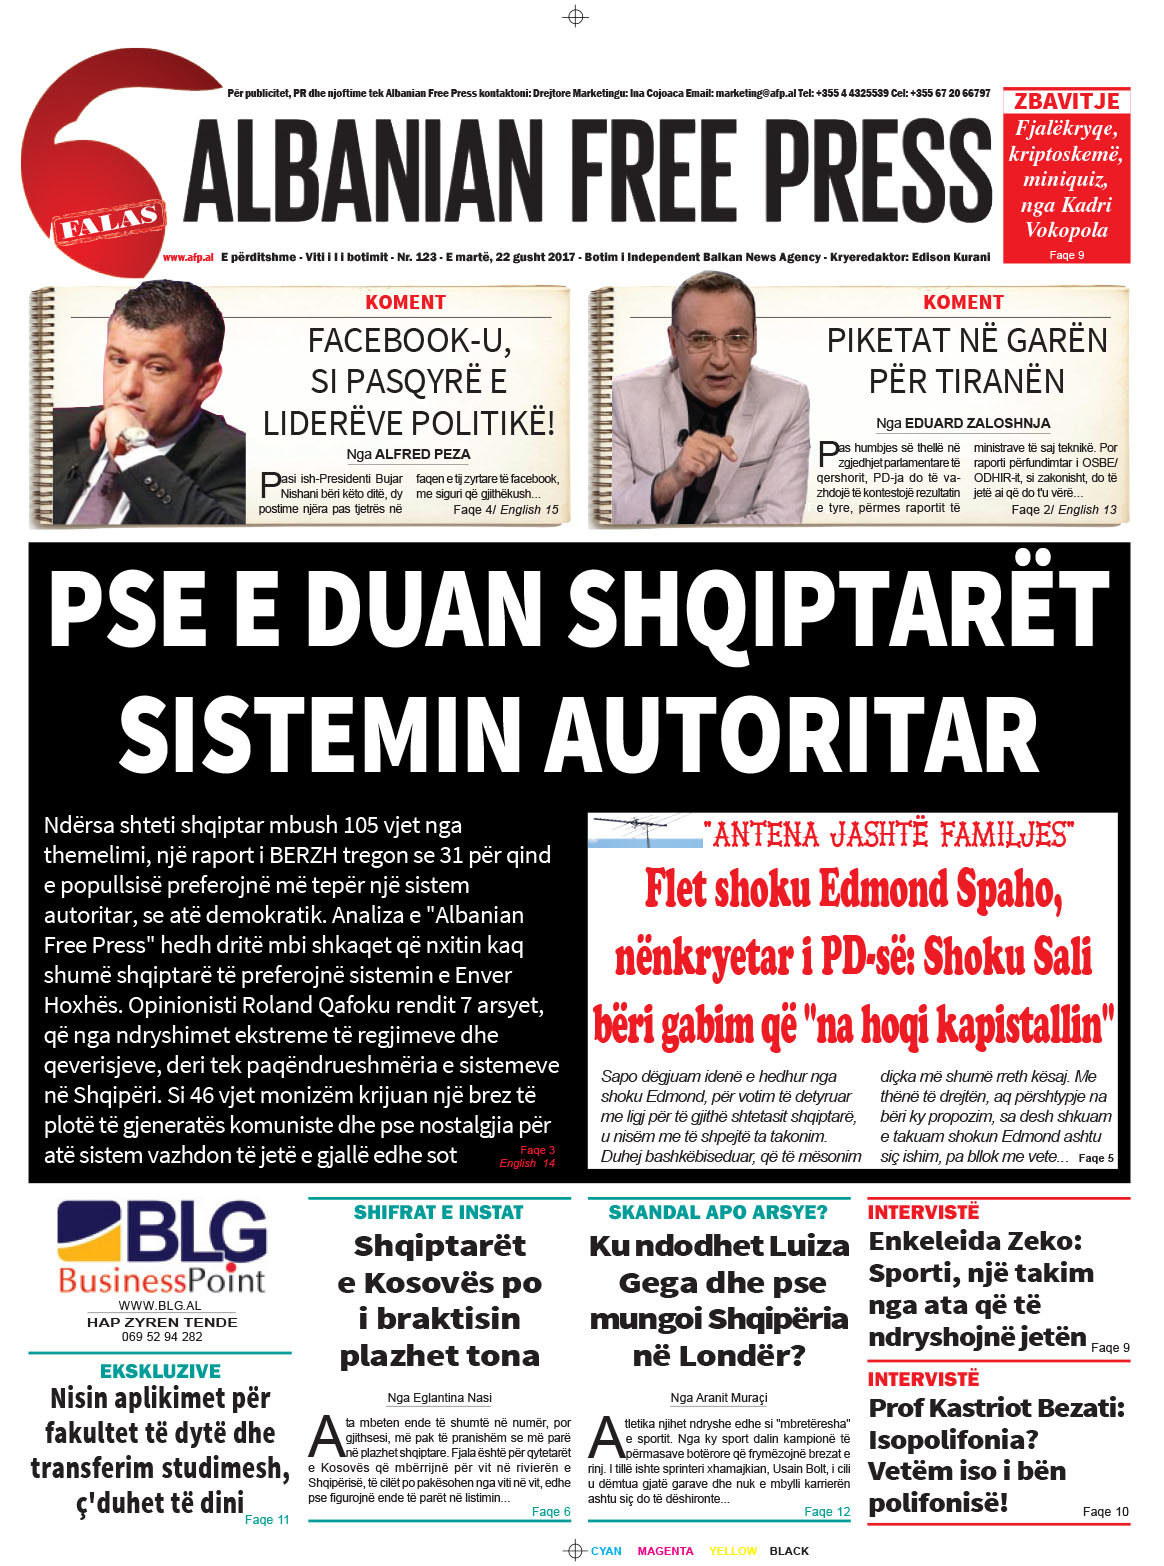 Lexoni sot 22 gusht 2017 në gazetën e përditshme “Albanian Free Press”